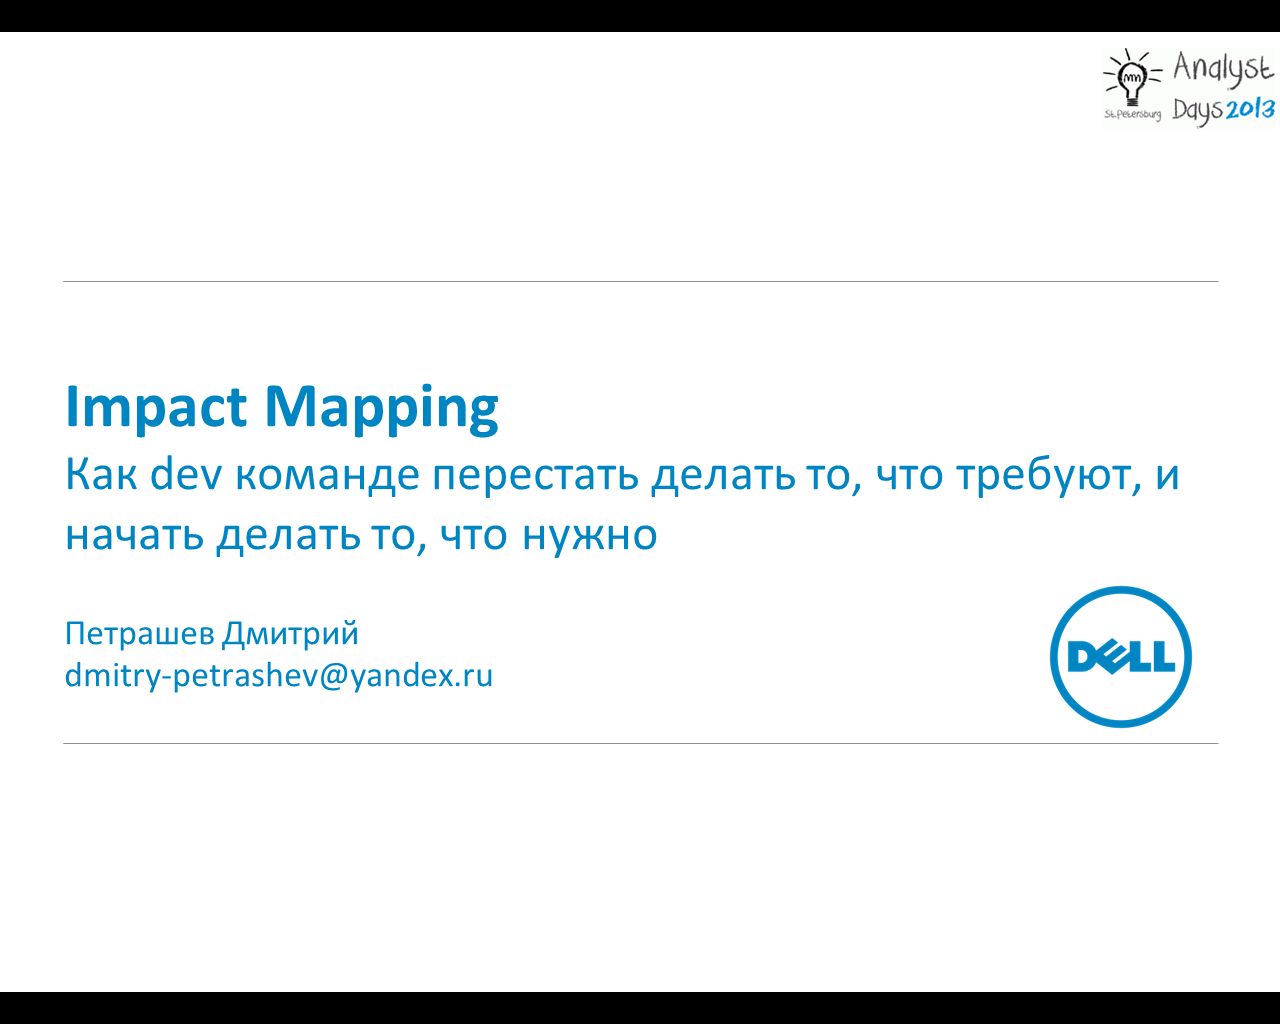 Impact Mapping — как dev команде перестать делать то, что требуют, и начать делать то, что нужно?